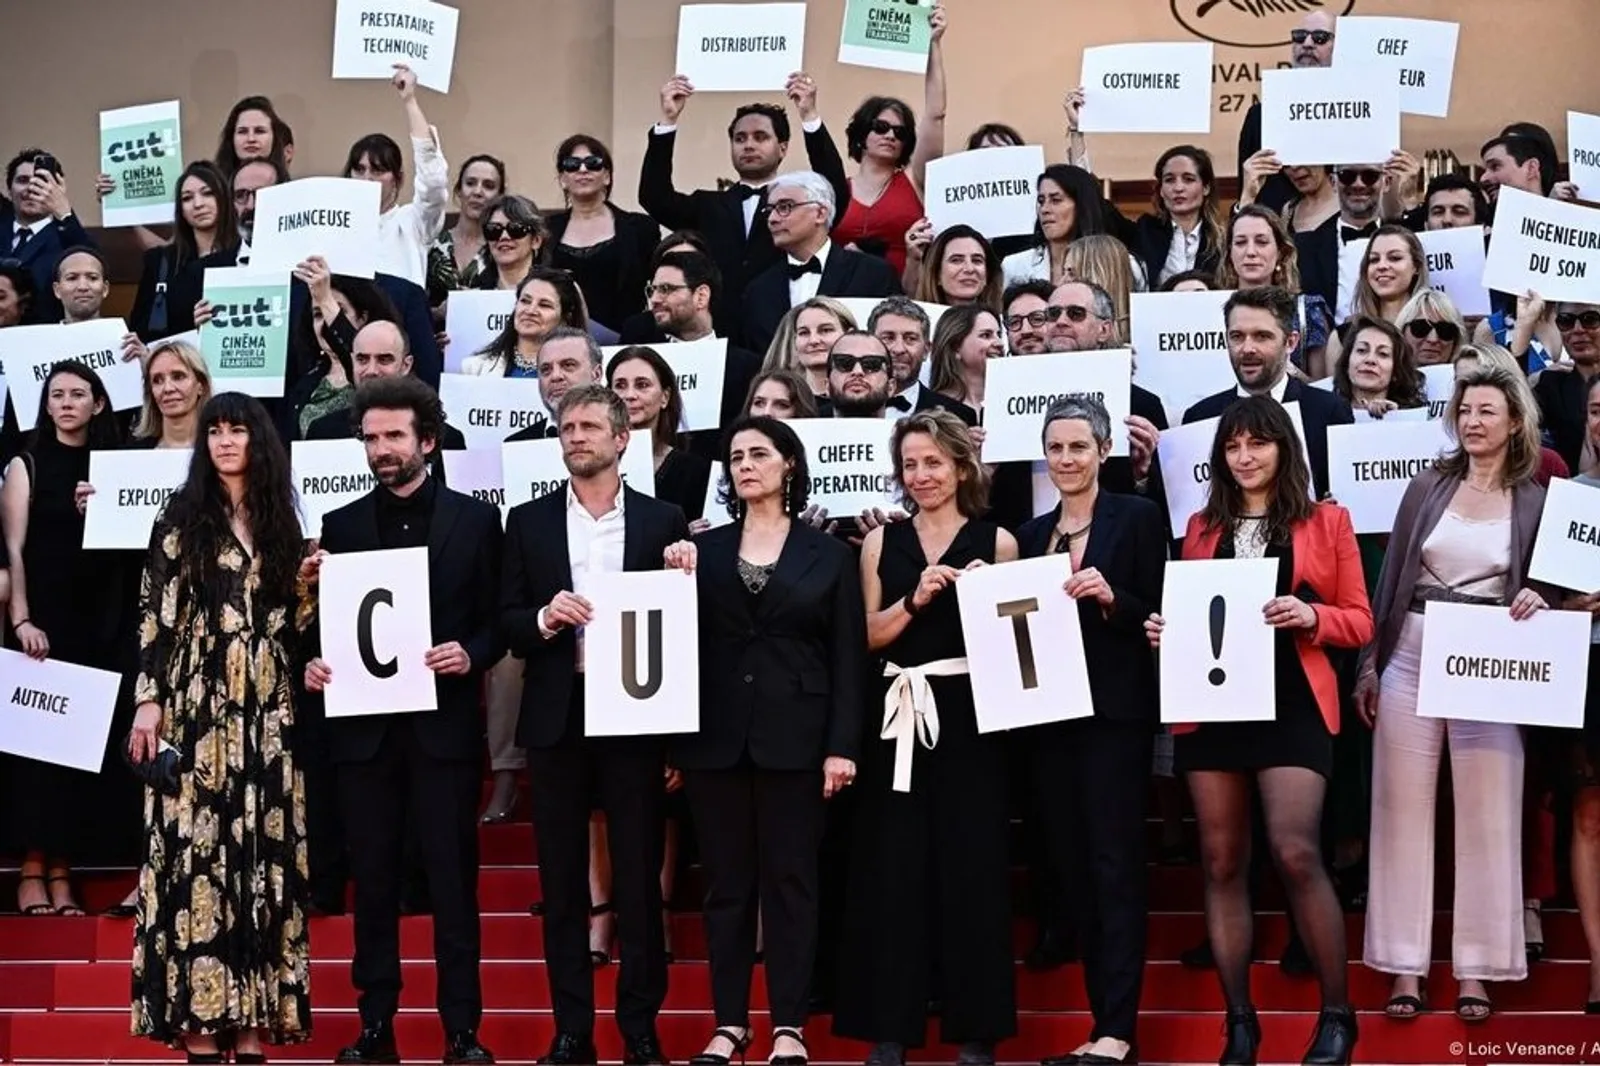 Daftar Kontroversi Panas dalam Ajang Cannes Film Festival